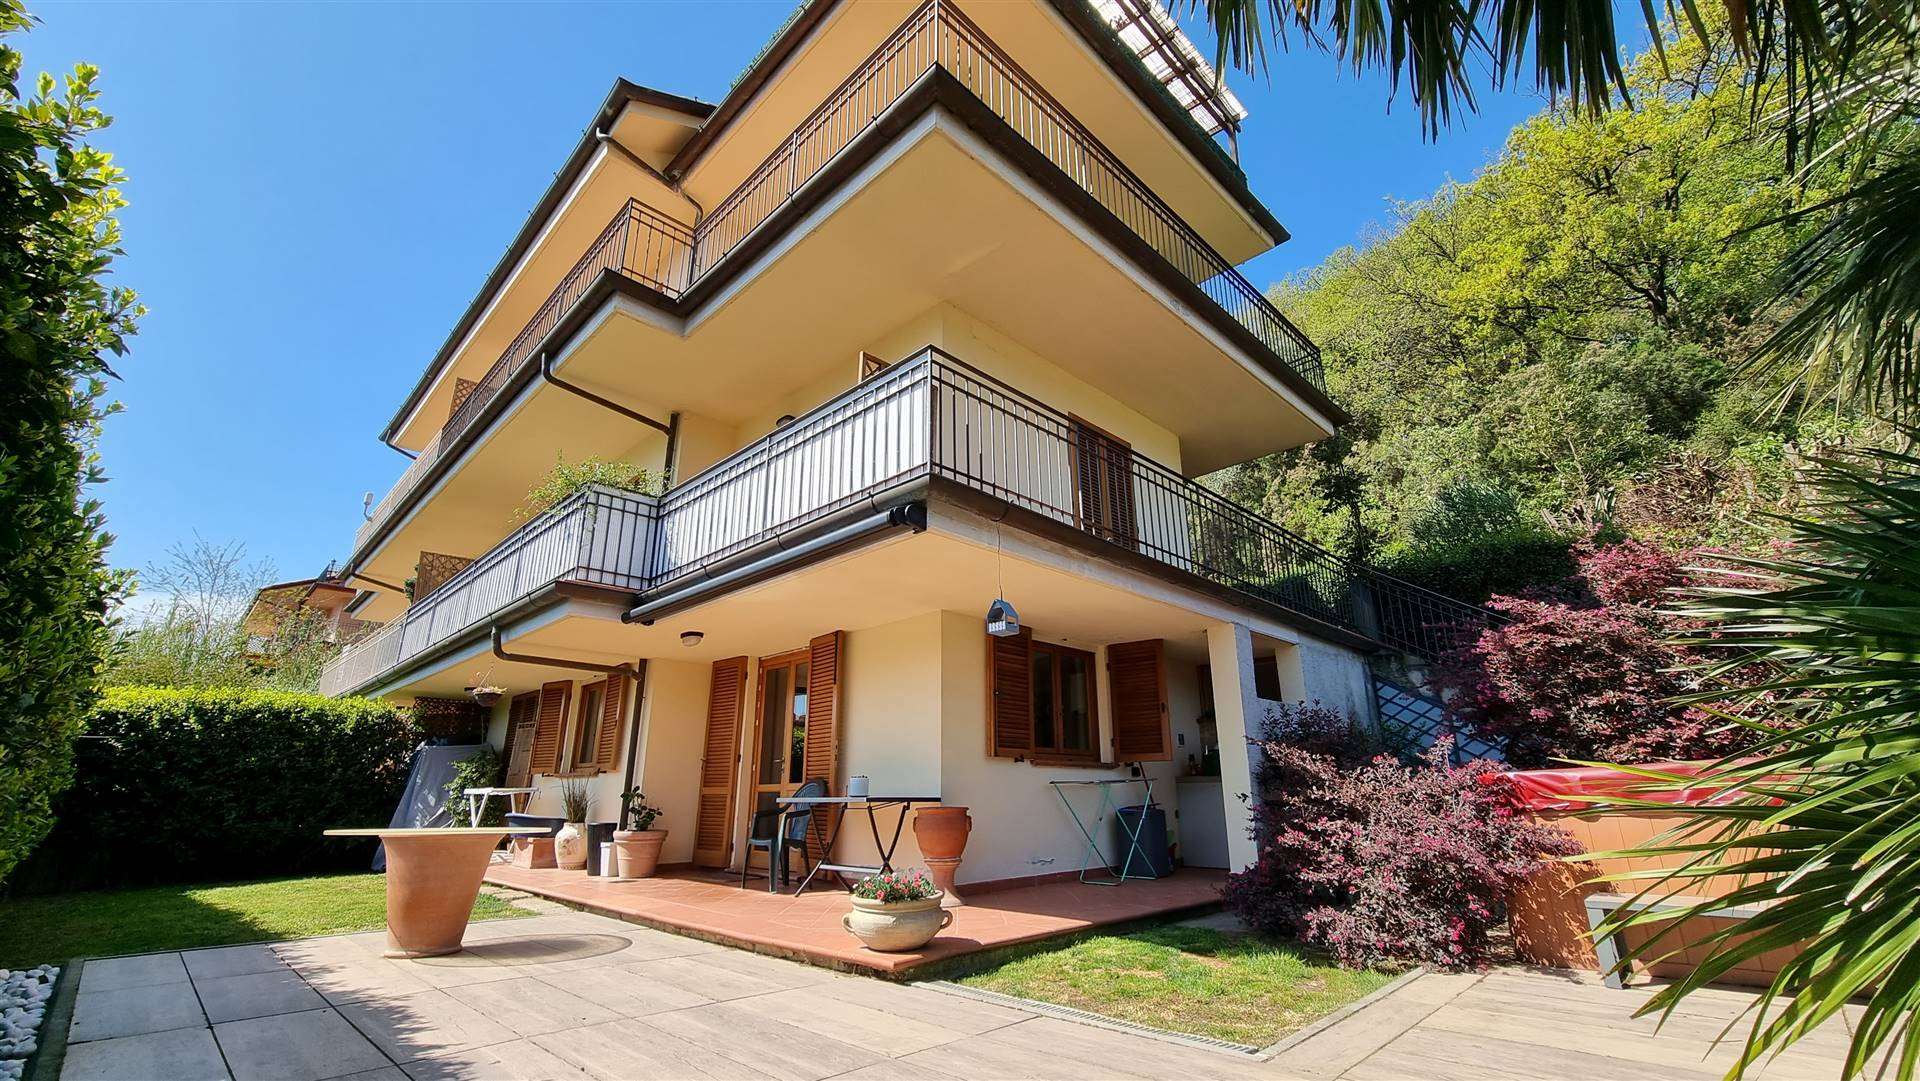 Villa Bifamiliare in vendita a Massarosa, 9 locali, prezzo € 288.000 | PortaleAgenzieImmobiliari.it